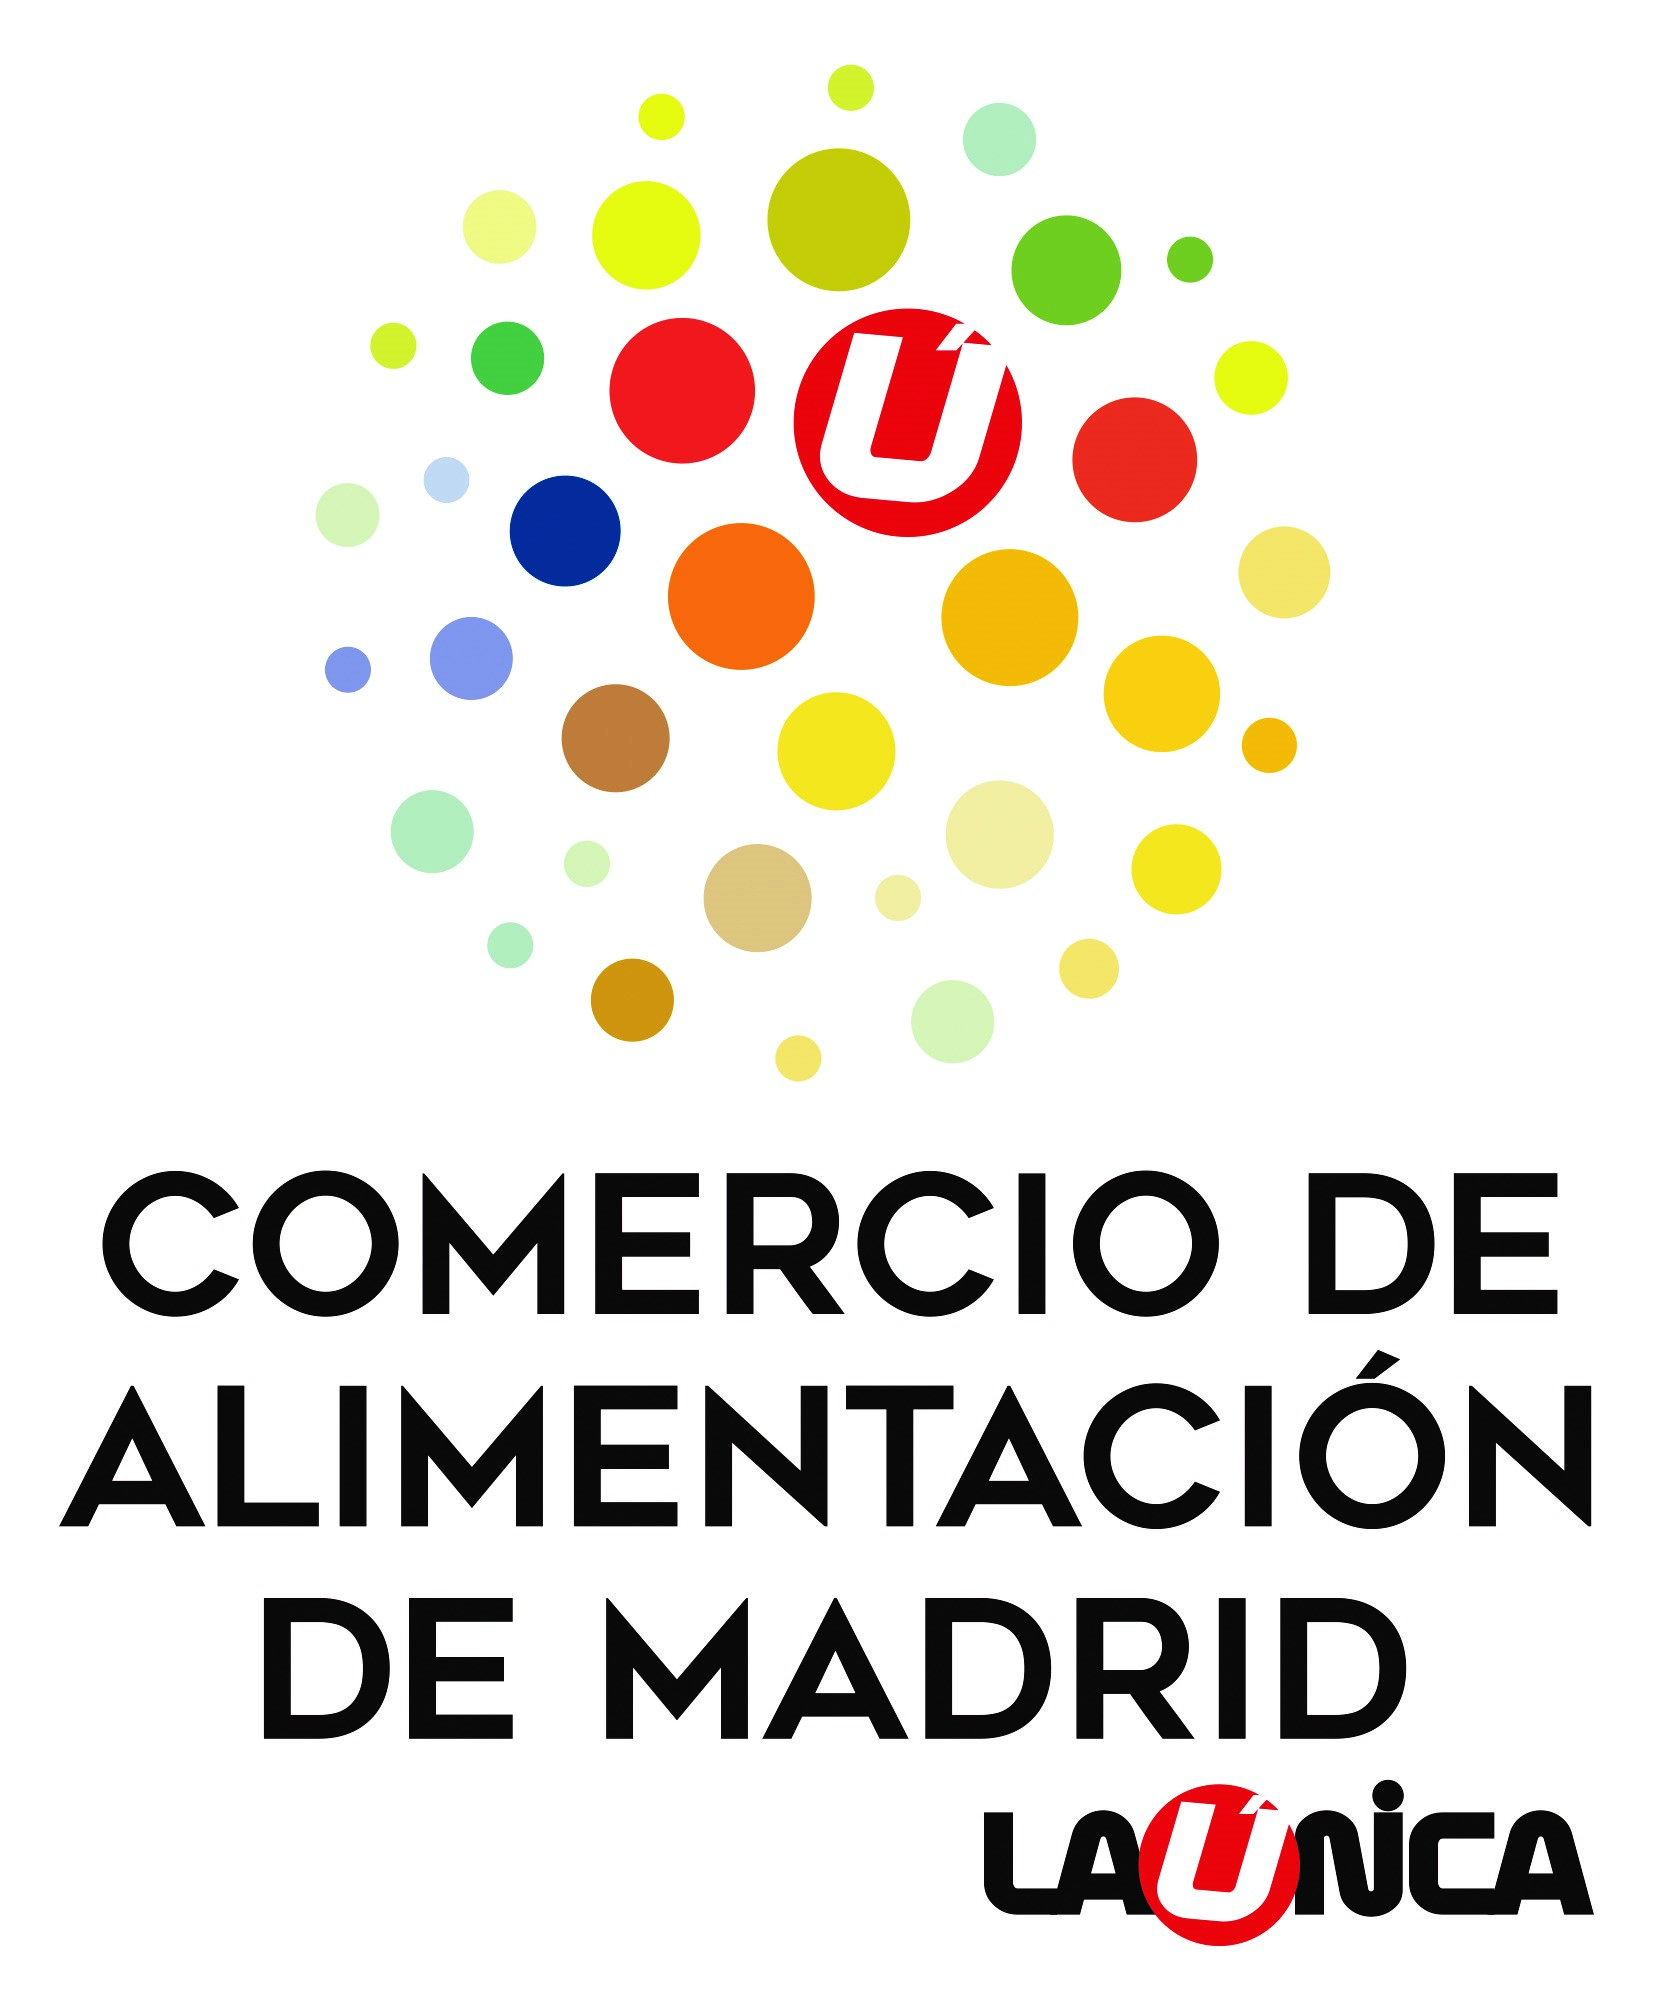 La Única Asociación Madrileña de Alimentación y Distribución